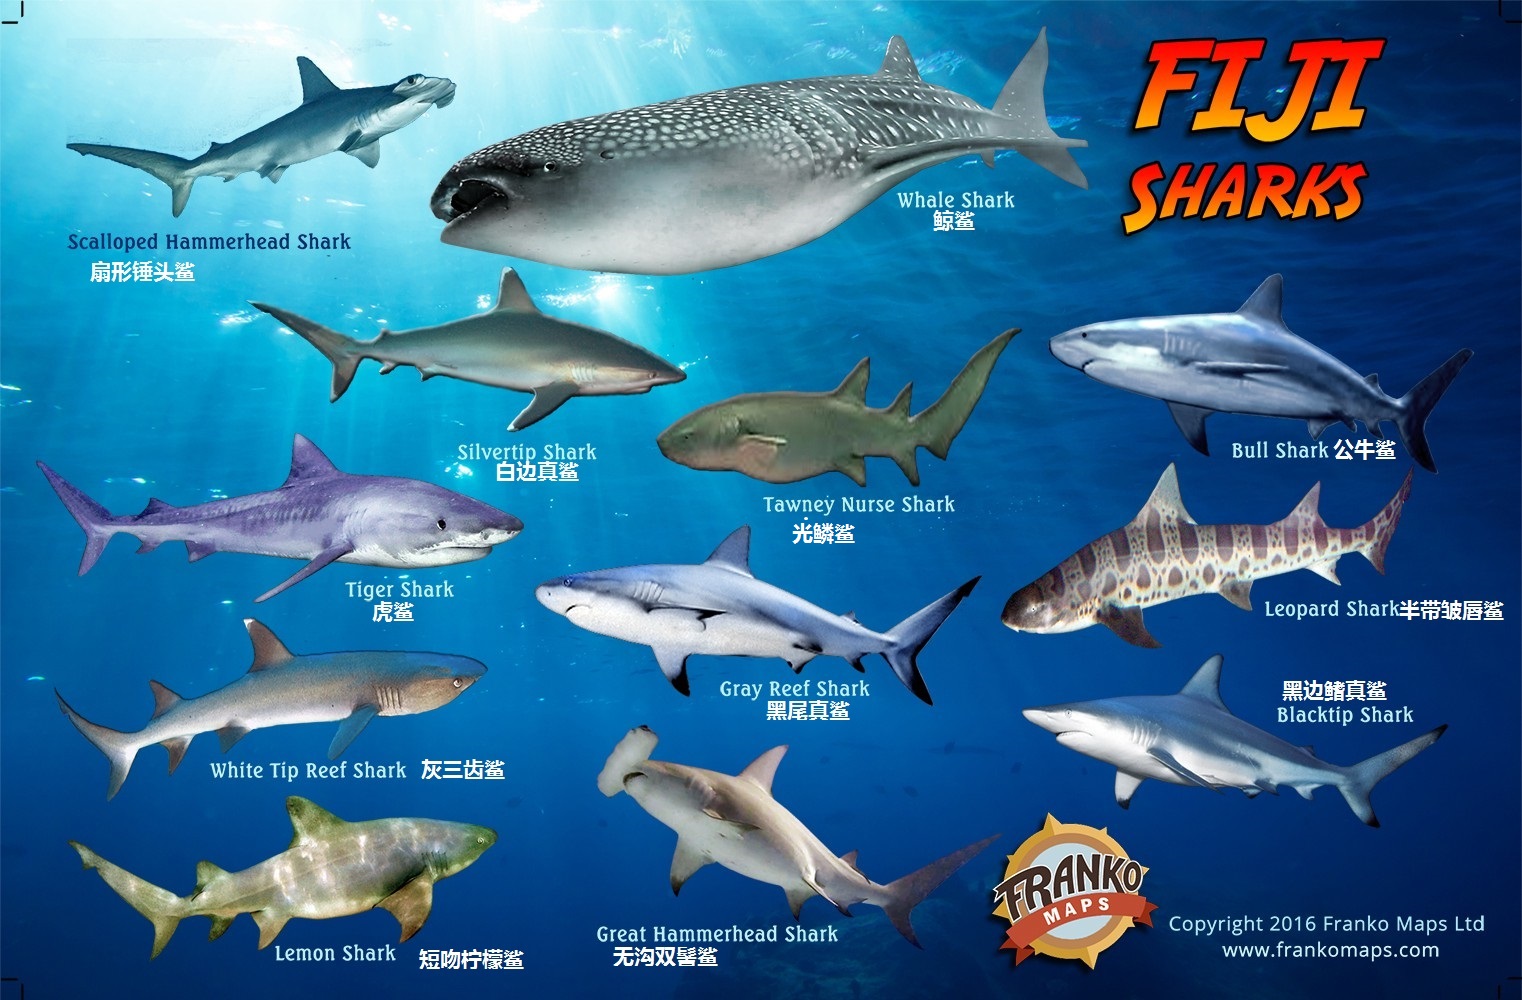 【科普向】去斐济看鲨鱼,请先知道这些信息